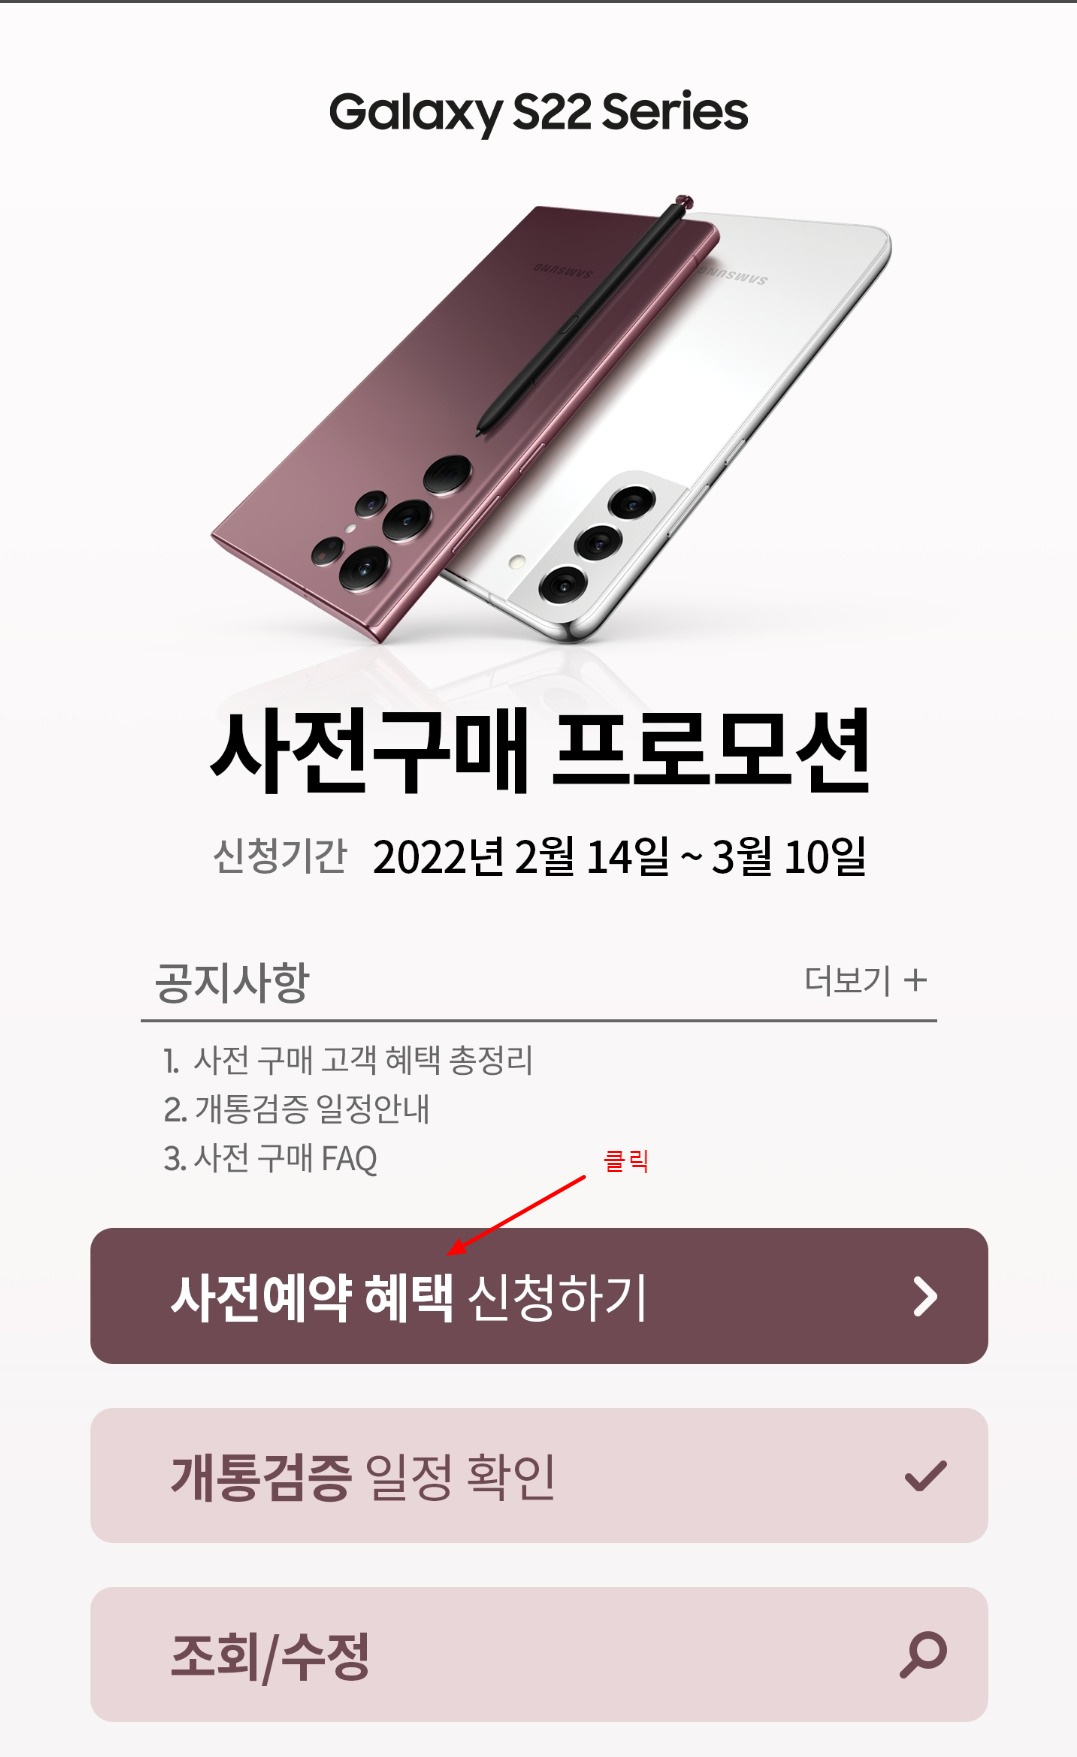 삼성 멤버스 앱을 통한 갤럭시 s22 사전 예약 혜택 신청 방법 상세히(samsung members)